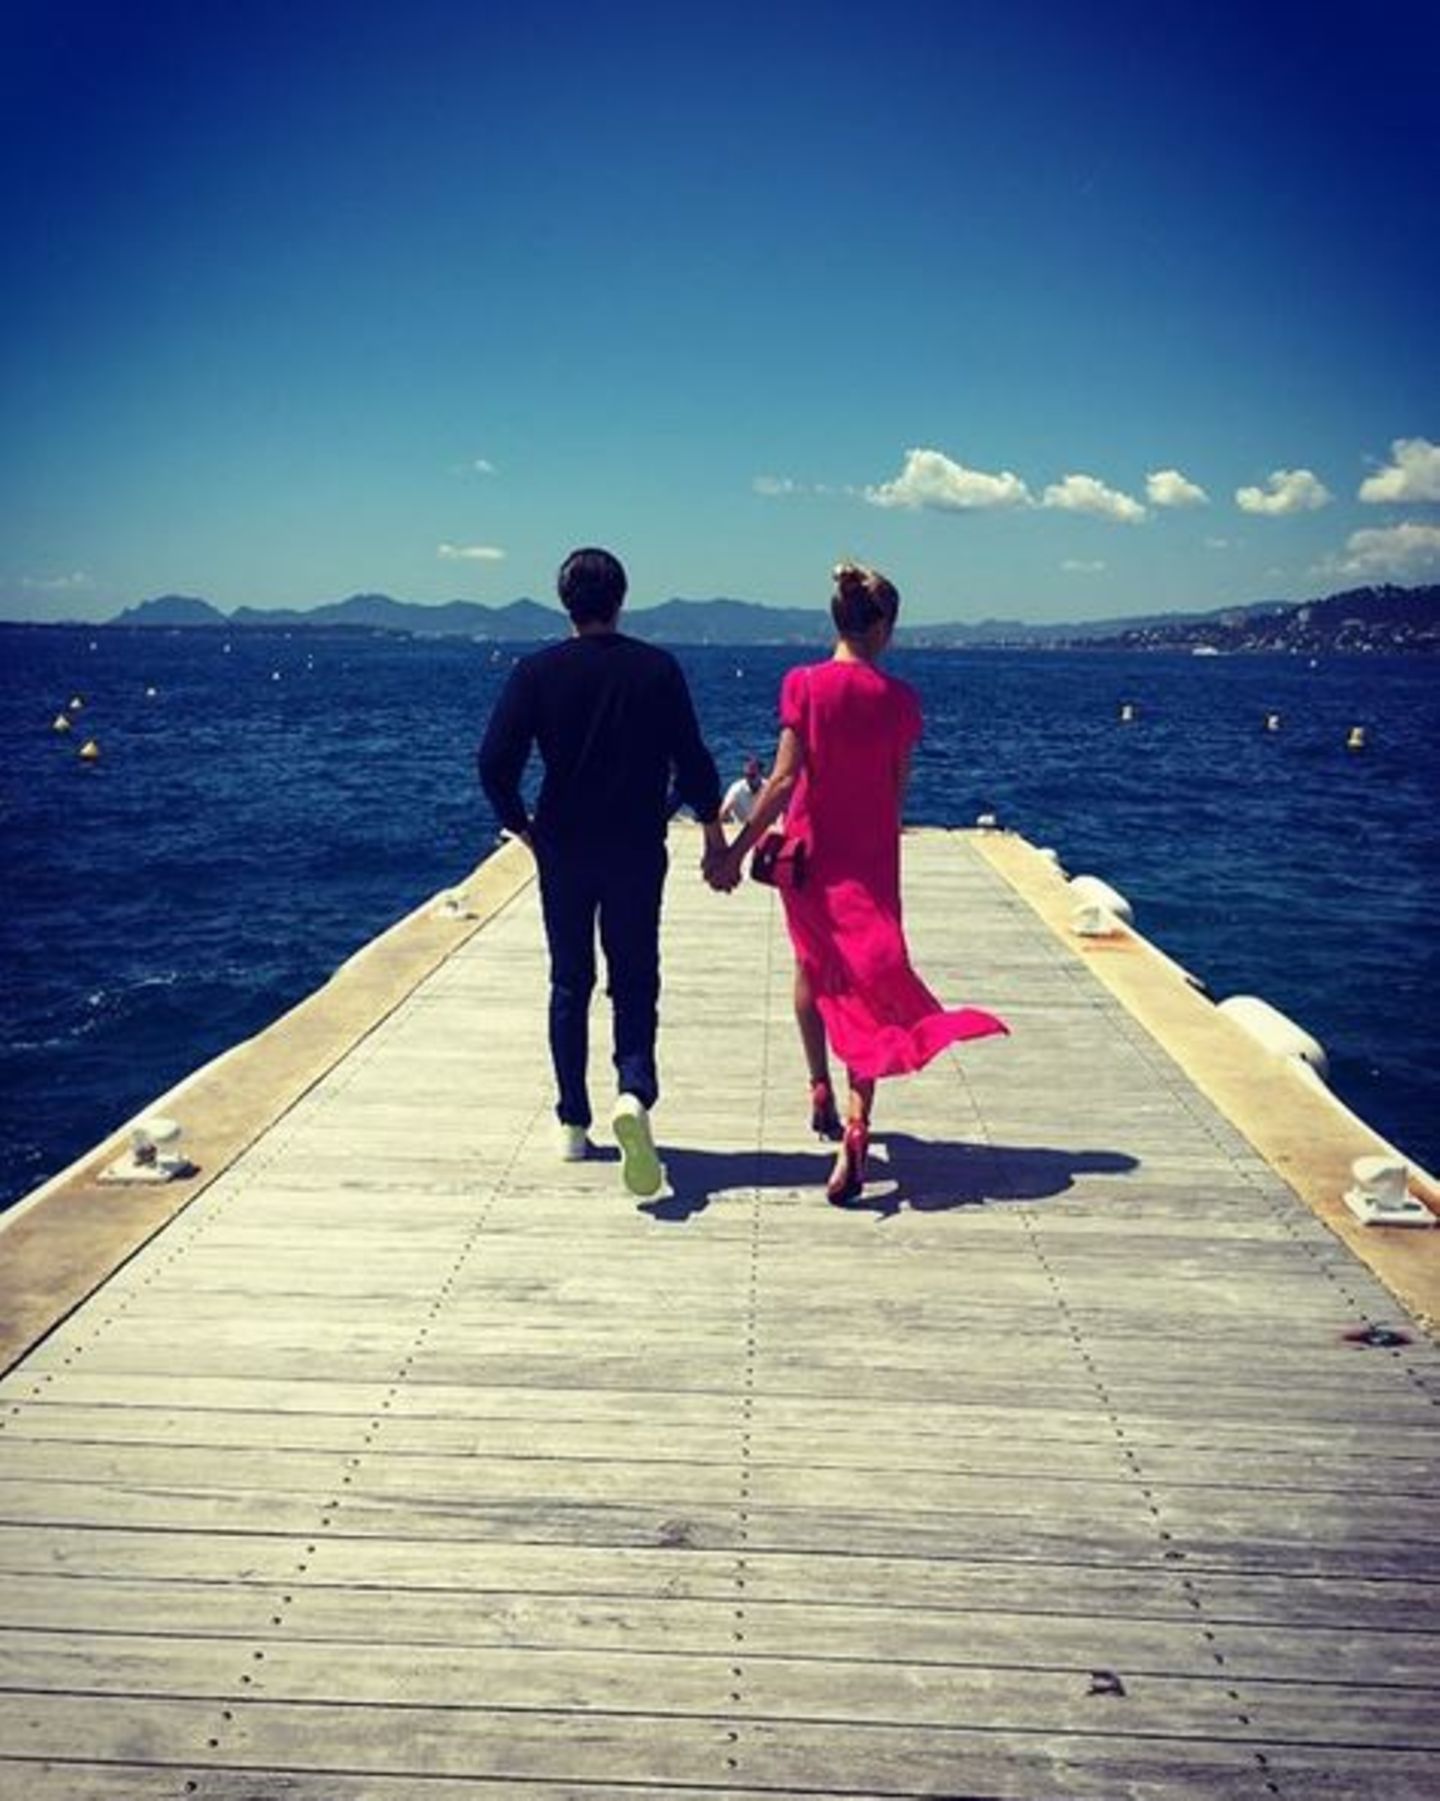 Mai 2016  Dieses Bild mit ihrem Liebsten beschreibt Heidi Klum auf Instagram kurz und knapp mit "Sunshine".